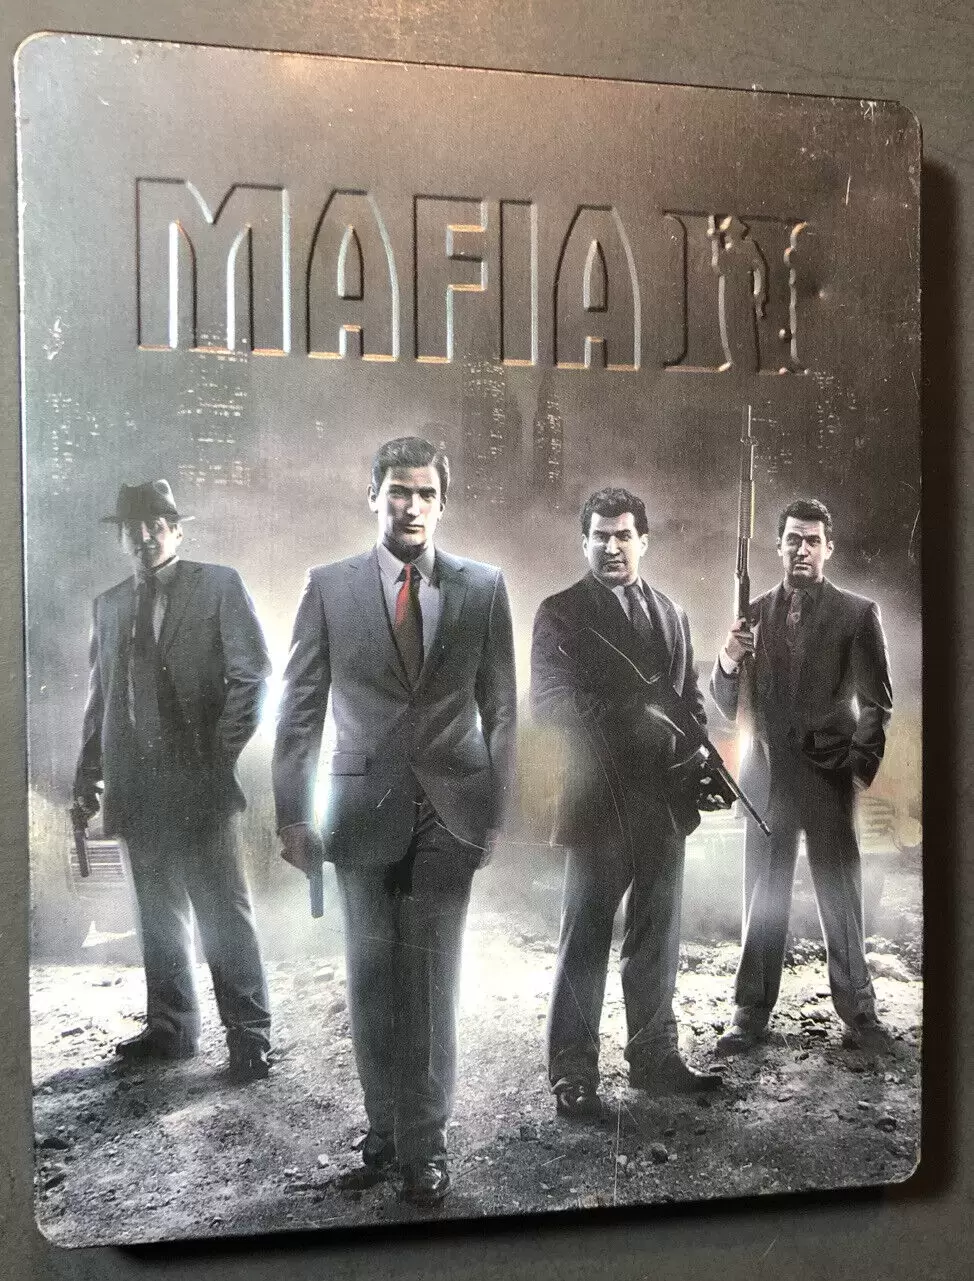 Duas coisas que você precisa saber sobre Mafia III antes de comprar – Re:  Games